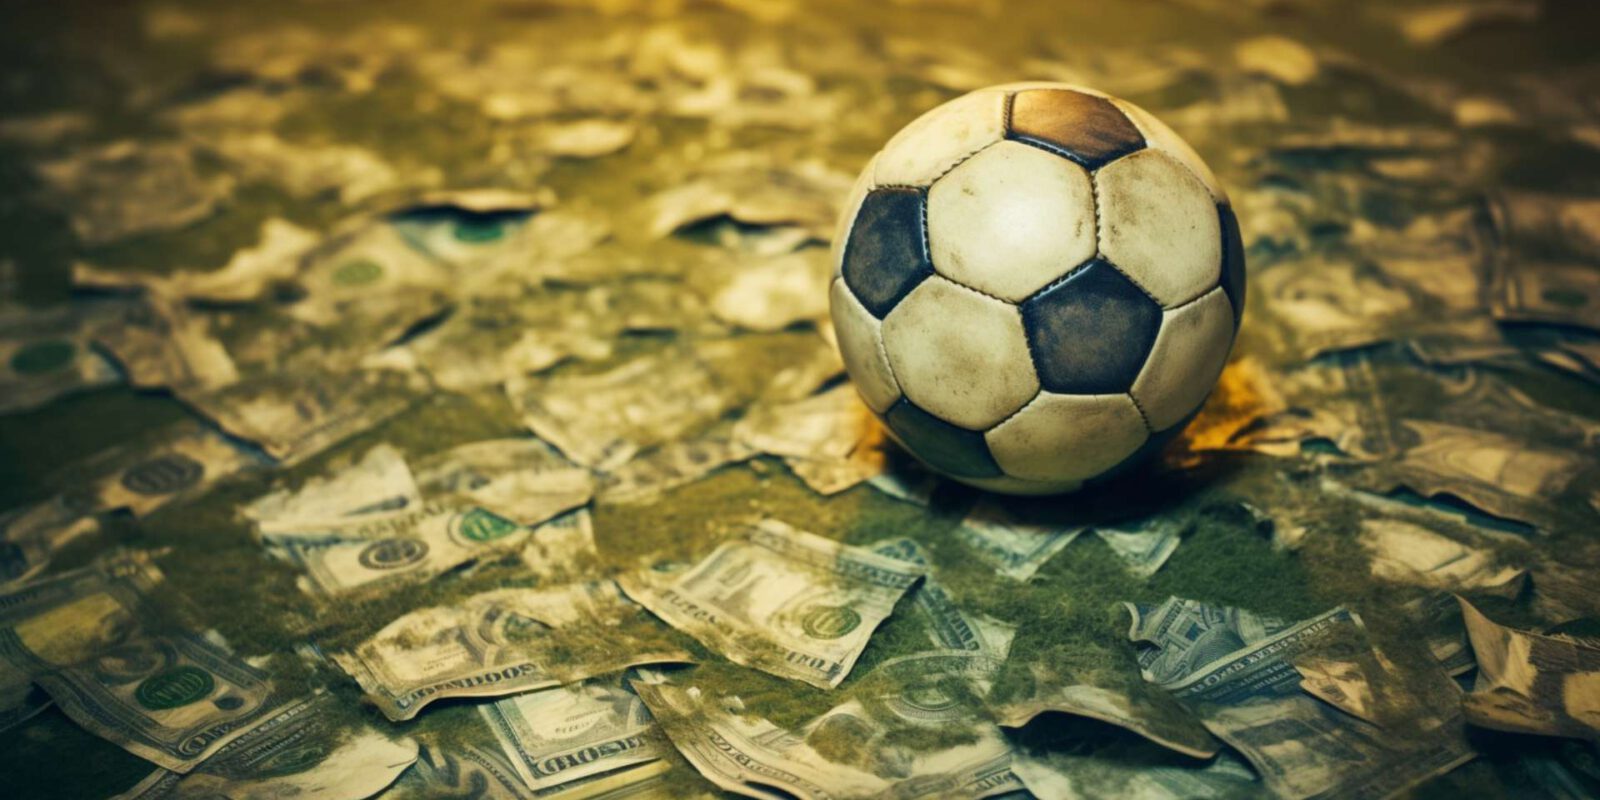 Titelbild: Fußball: Jogo do dinheiro, Das Spiel des Geldes